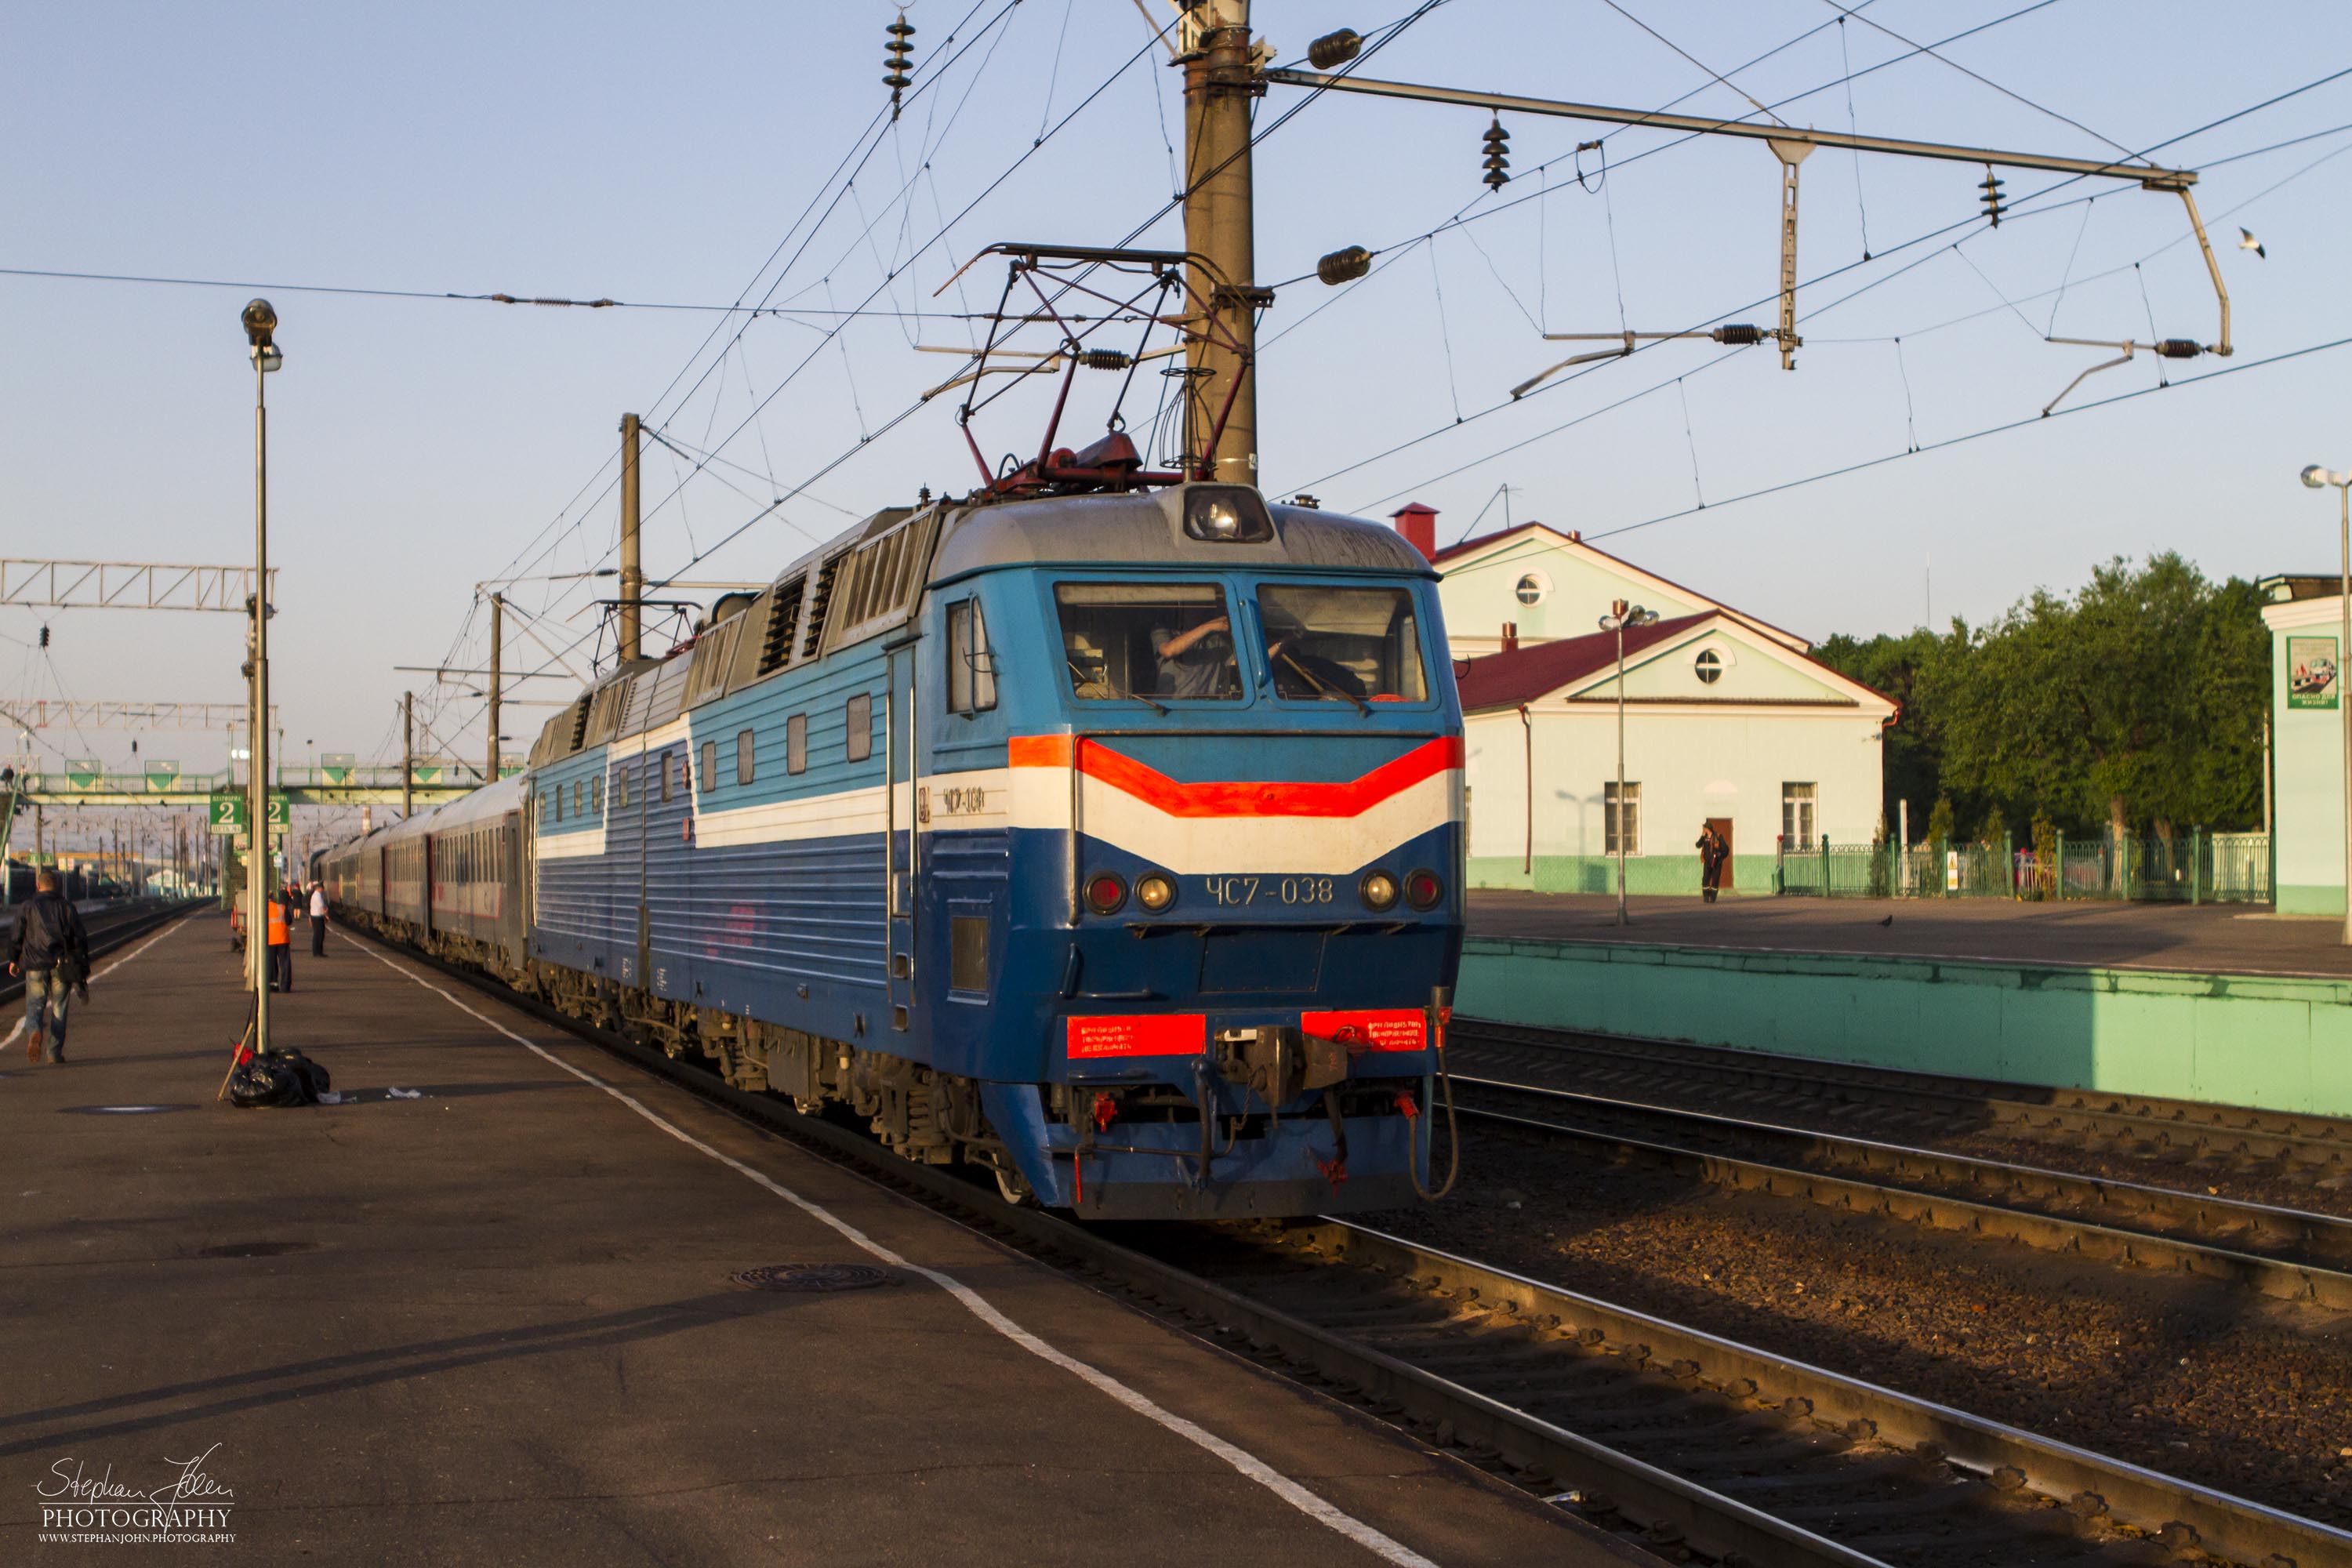 Auf der fahrt nach Moskau wird im russischen Wjasma das letzte mal die Lok getauscht.